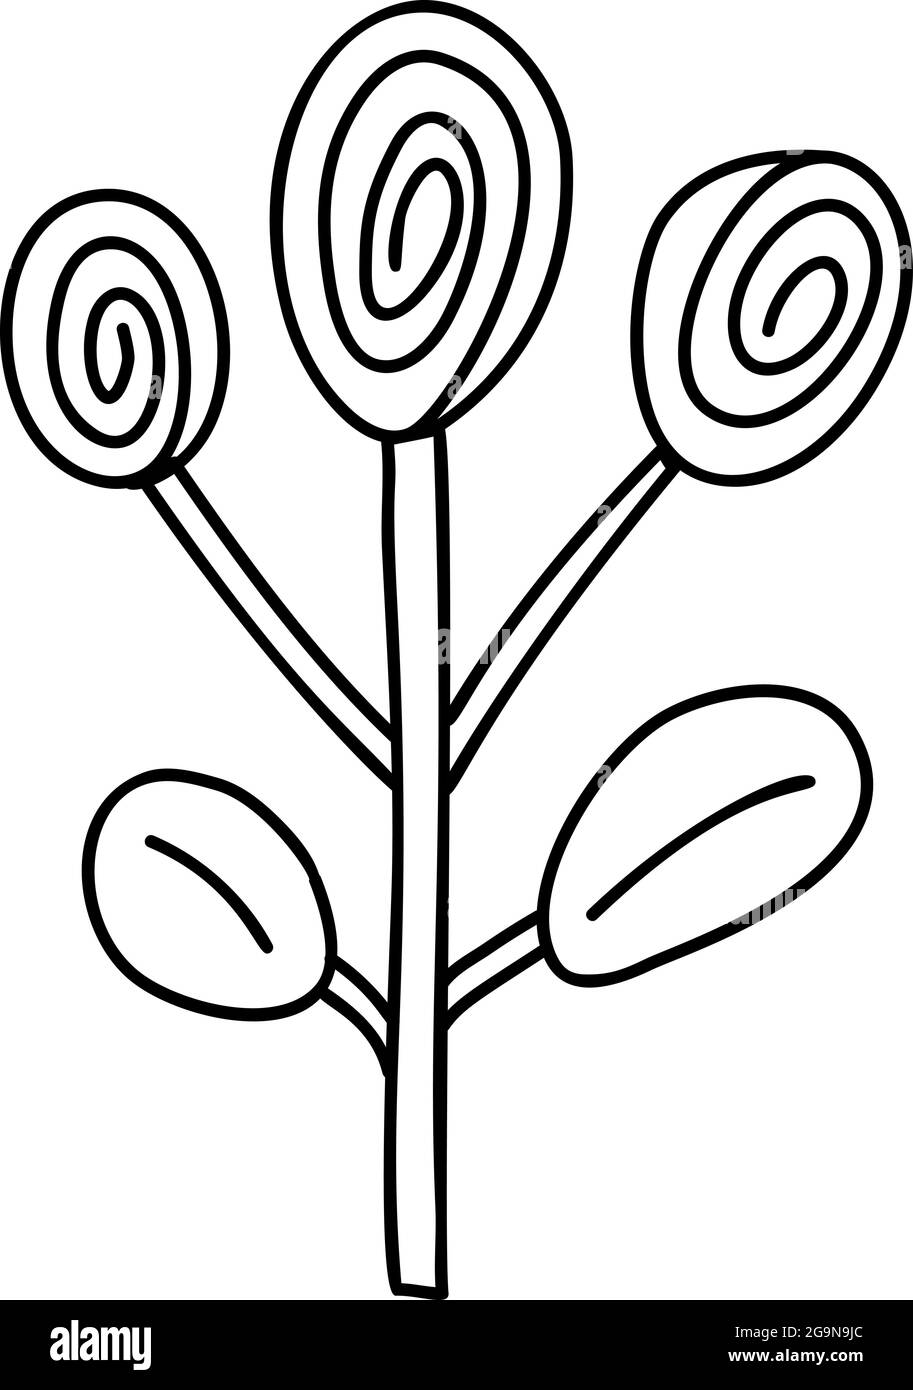 Fiore stilizzato Spring Vector in stile monolino. Elemento grafico dell'illustrazione scandinava. Immagine floreale estate decorativa per il saluto Valentine Card Illustrazione Vettoriale